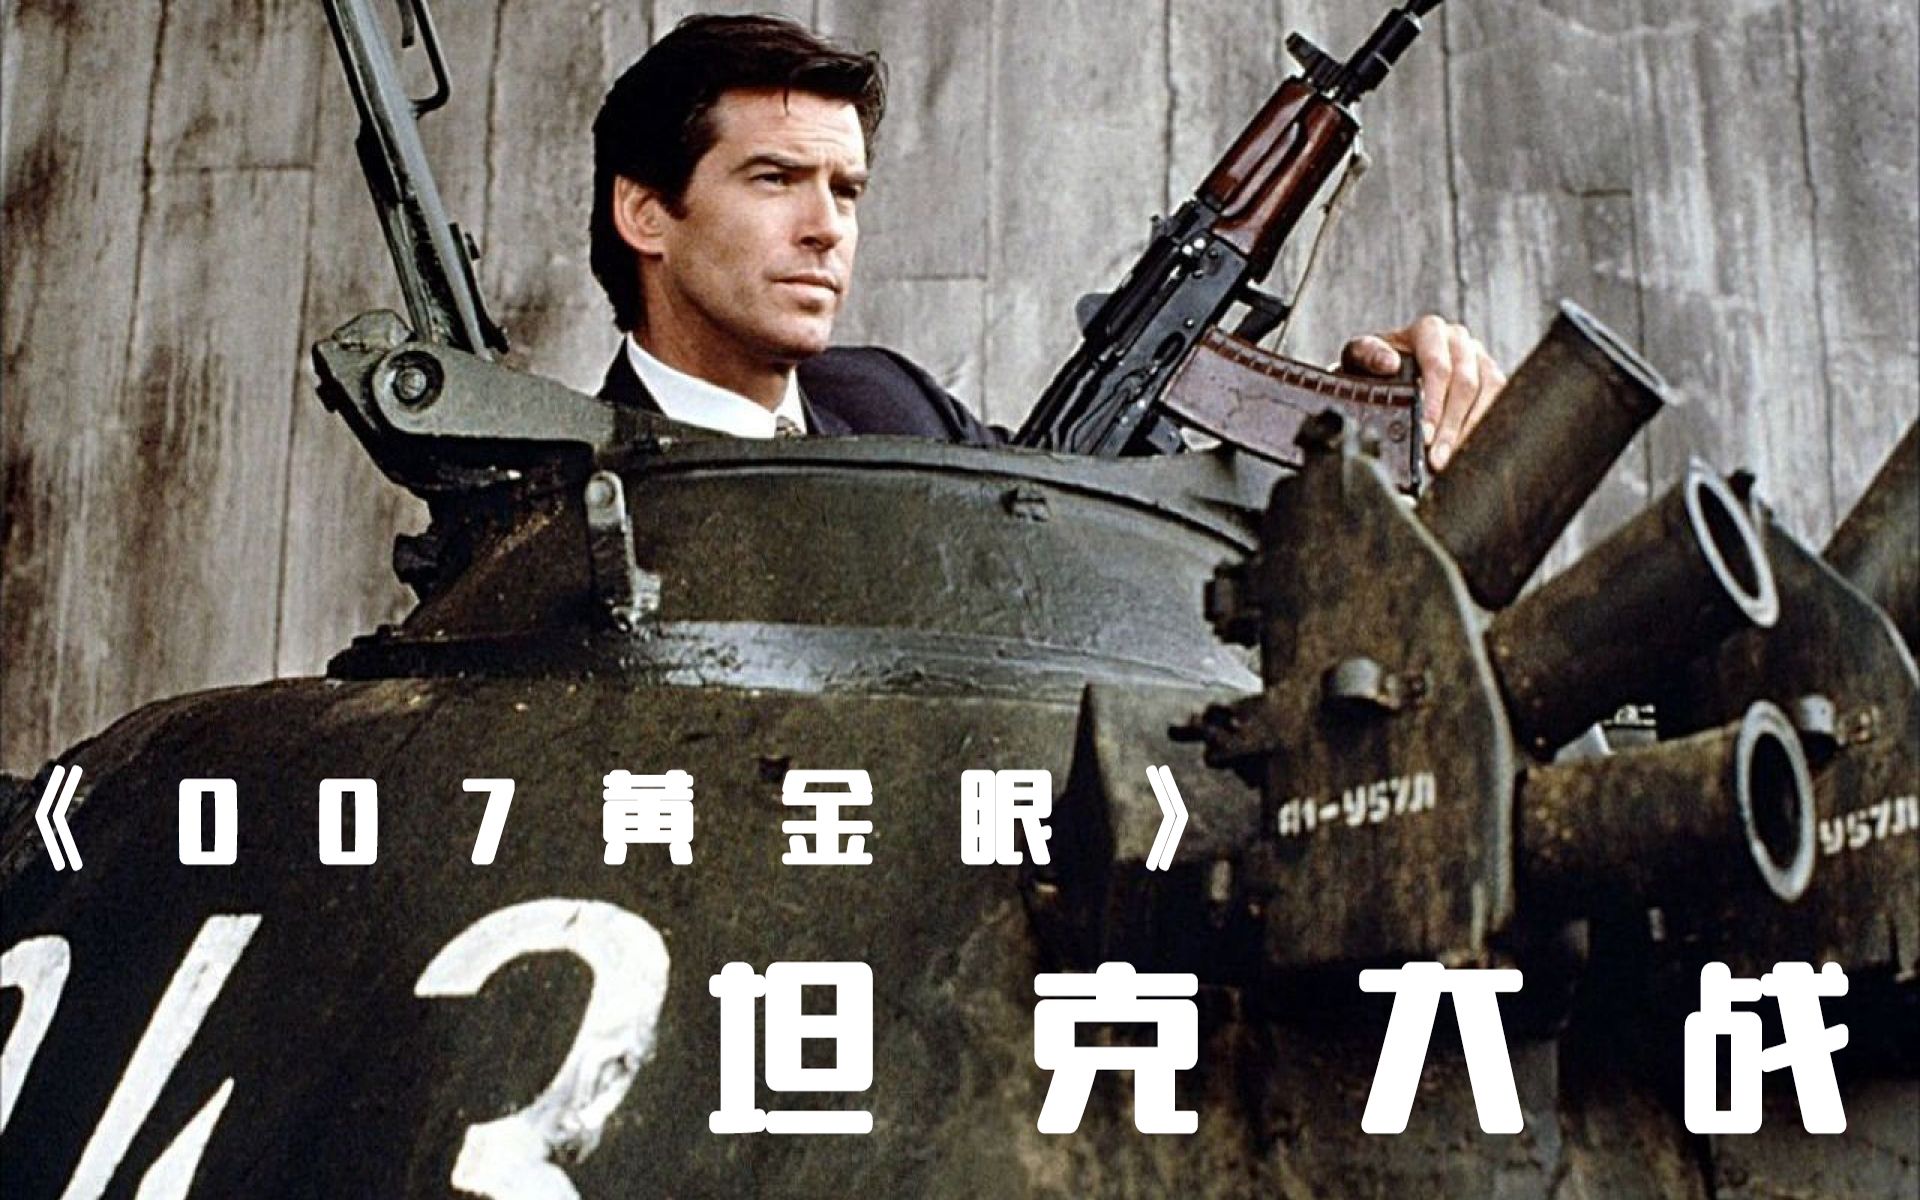 007经典动作电影《黄金眼》goldeneye 俄罗斯街头坦克大战